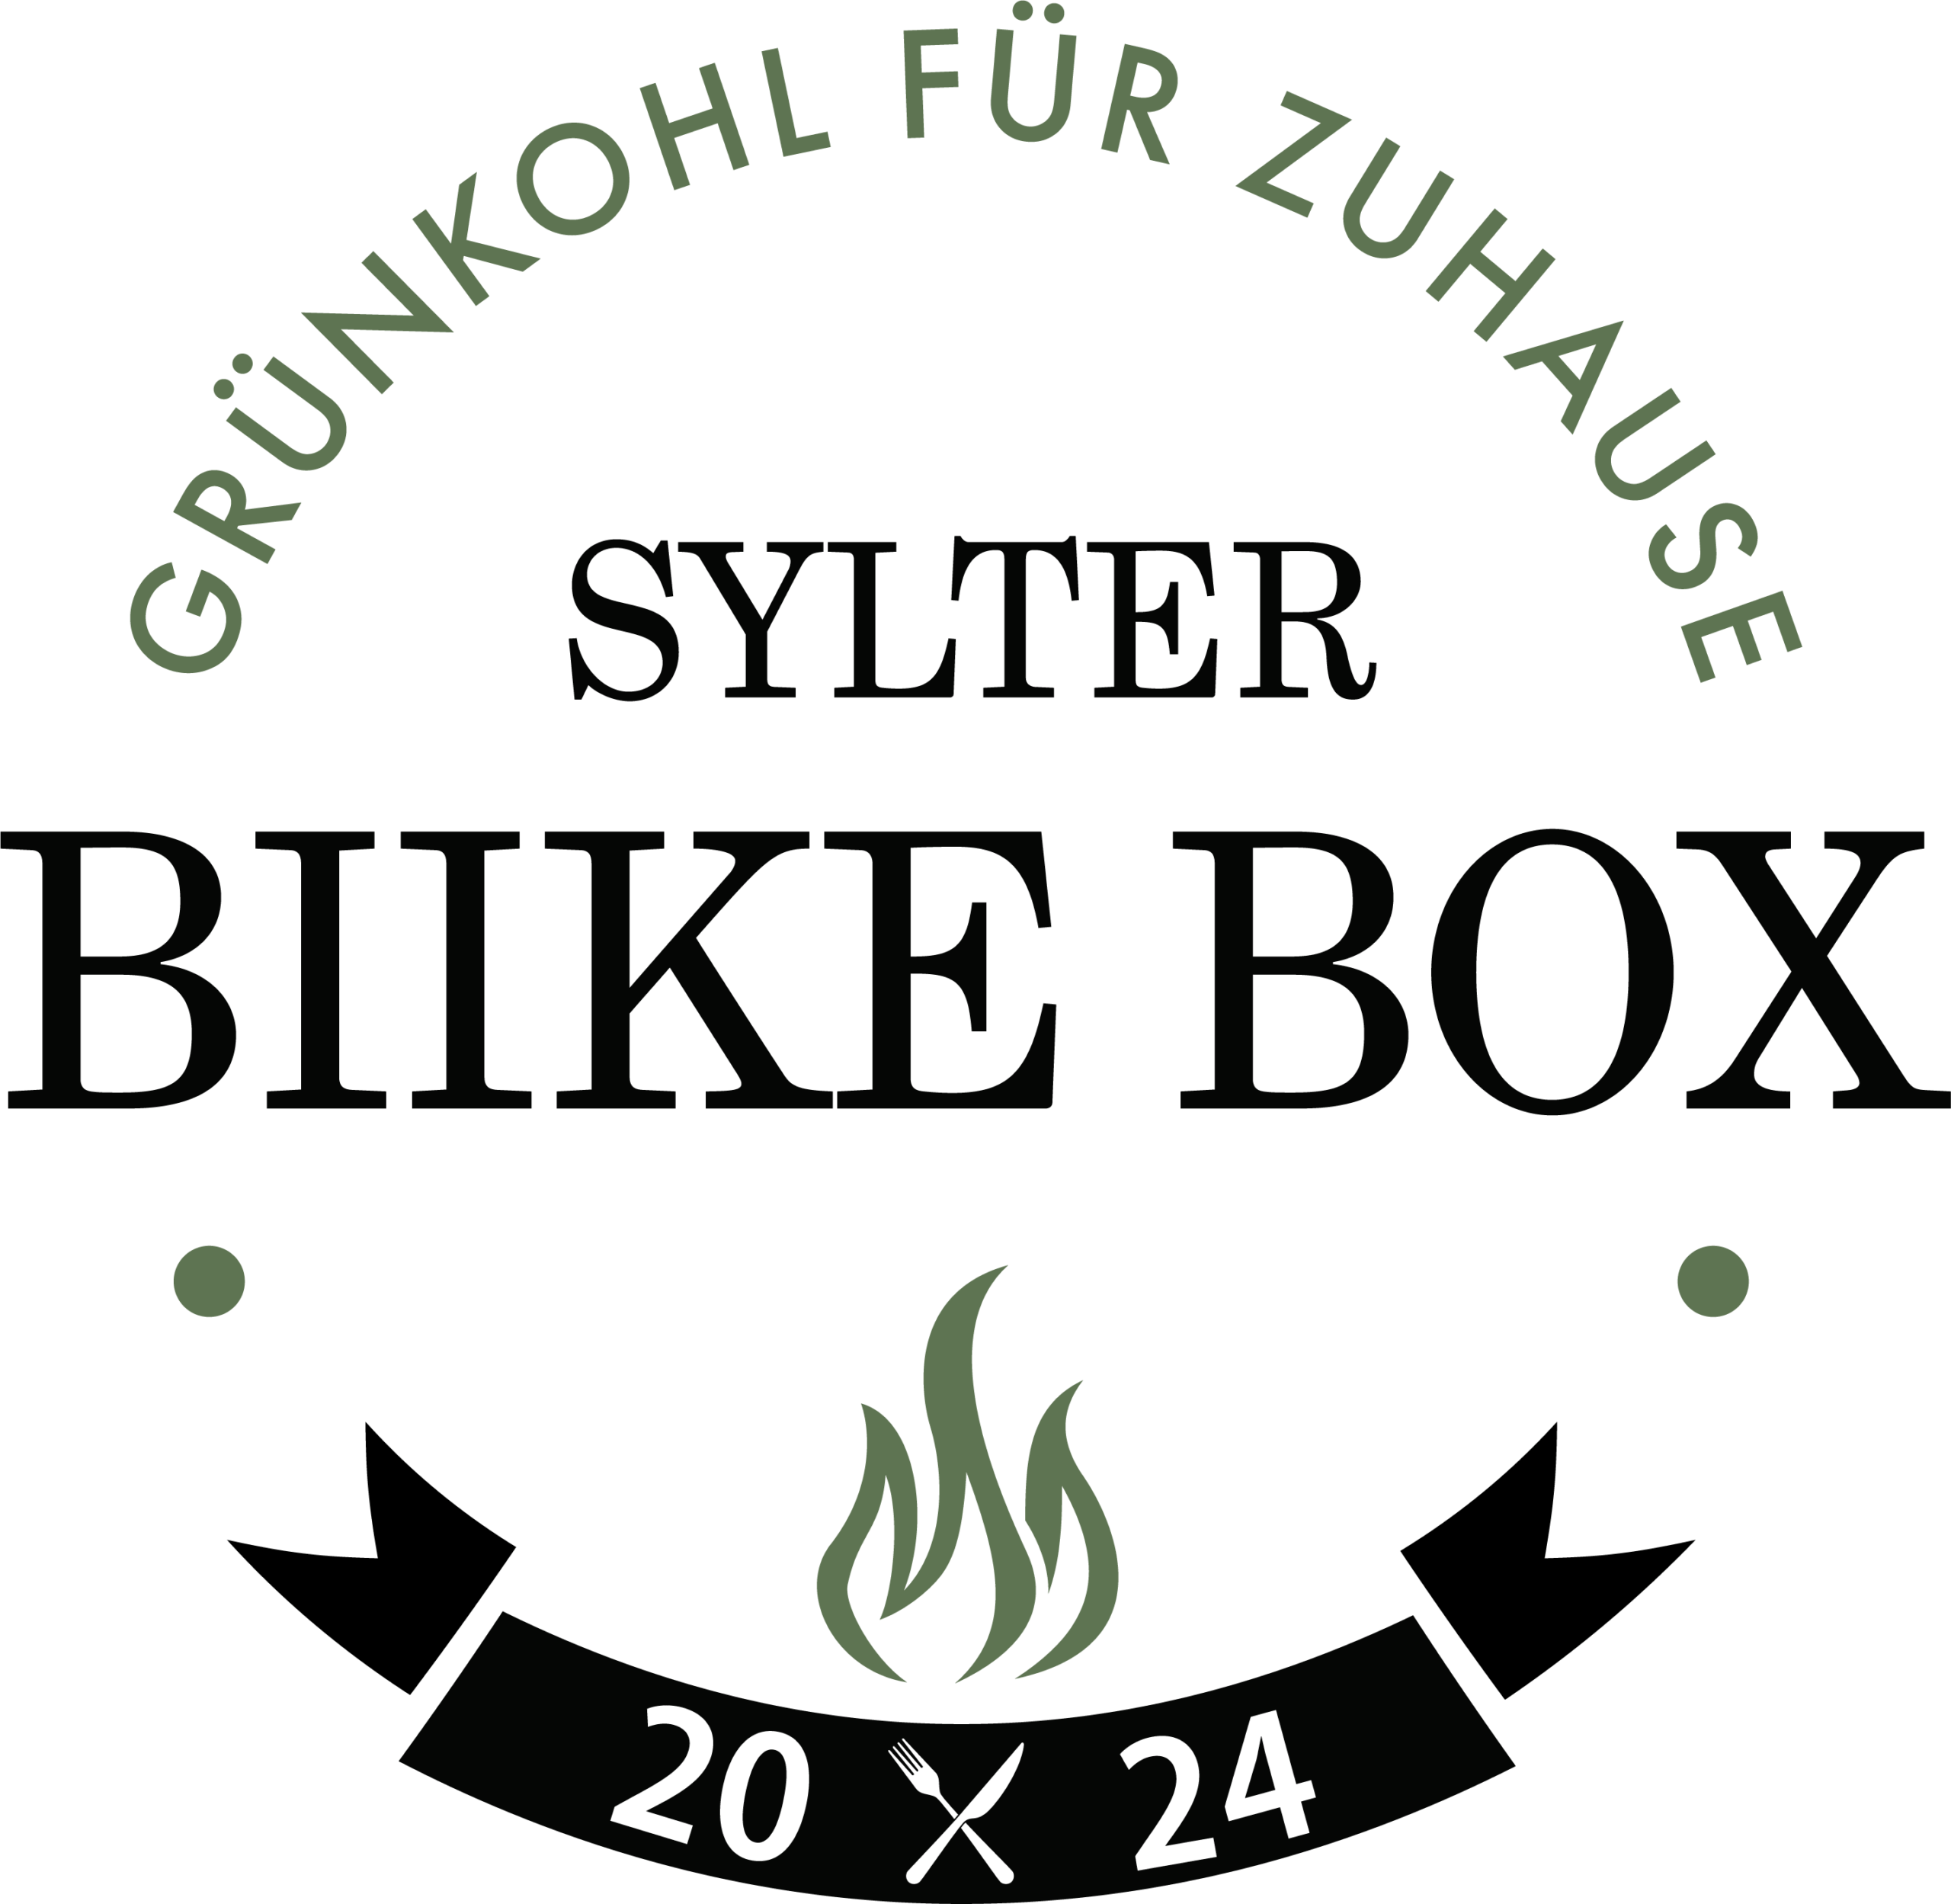 Sylter Biike Box